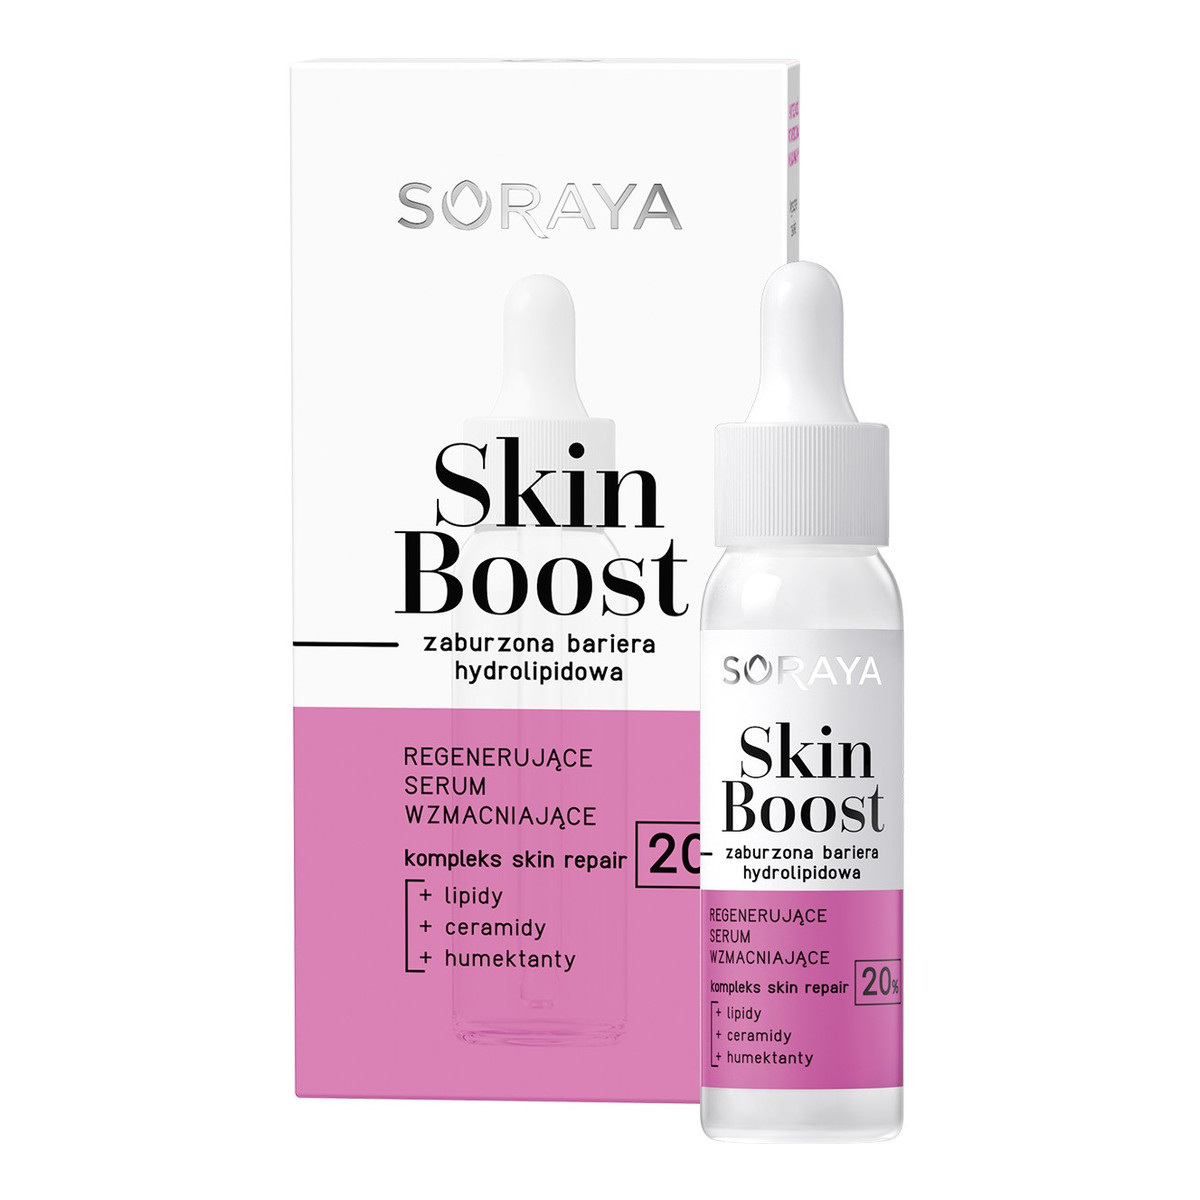 Soraya Skin boost regenerujące serum wzmacniające-zaburzona bariera hydrolipidowa 30ml